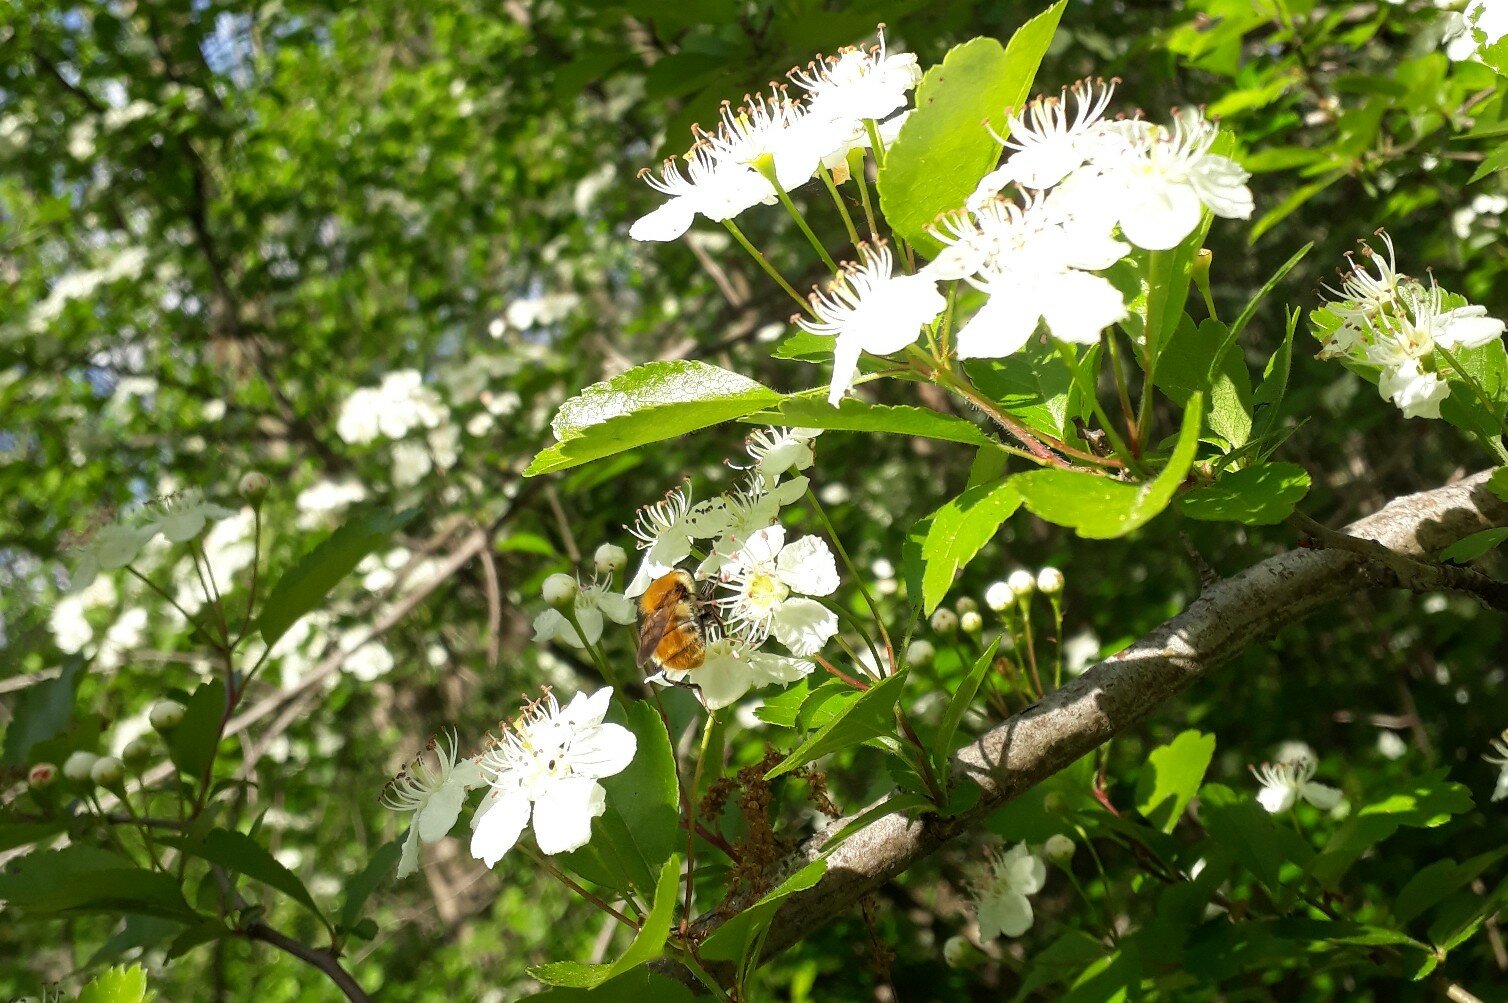 una Criorhina floccosa, insetto simile ad un'ape, su un fiore bianco